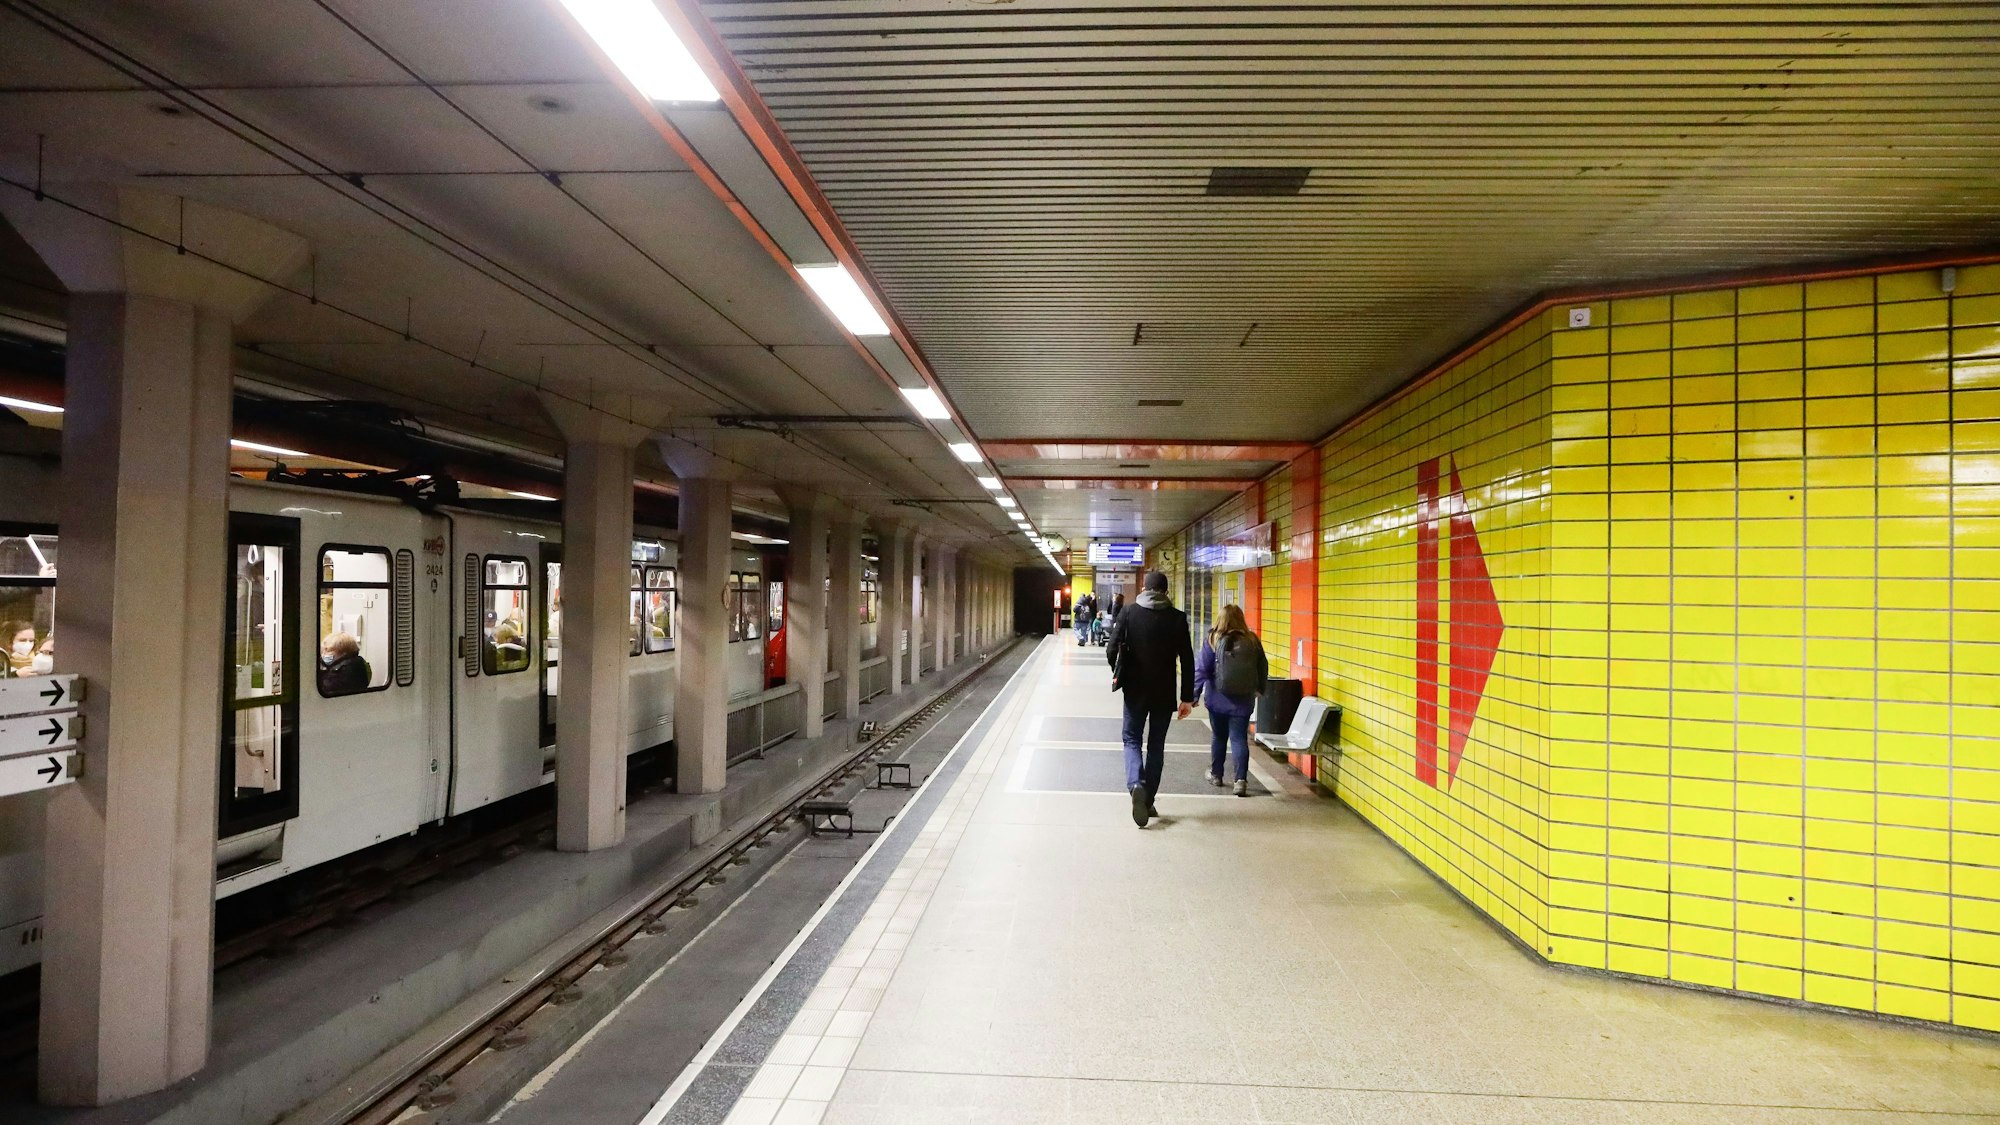 
Blick in die U-Bahn-Station Hans-Böckler-Platz welche mit gelben Kacheln ausgestaltet ist.